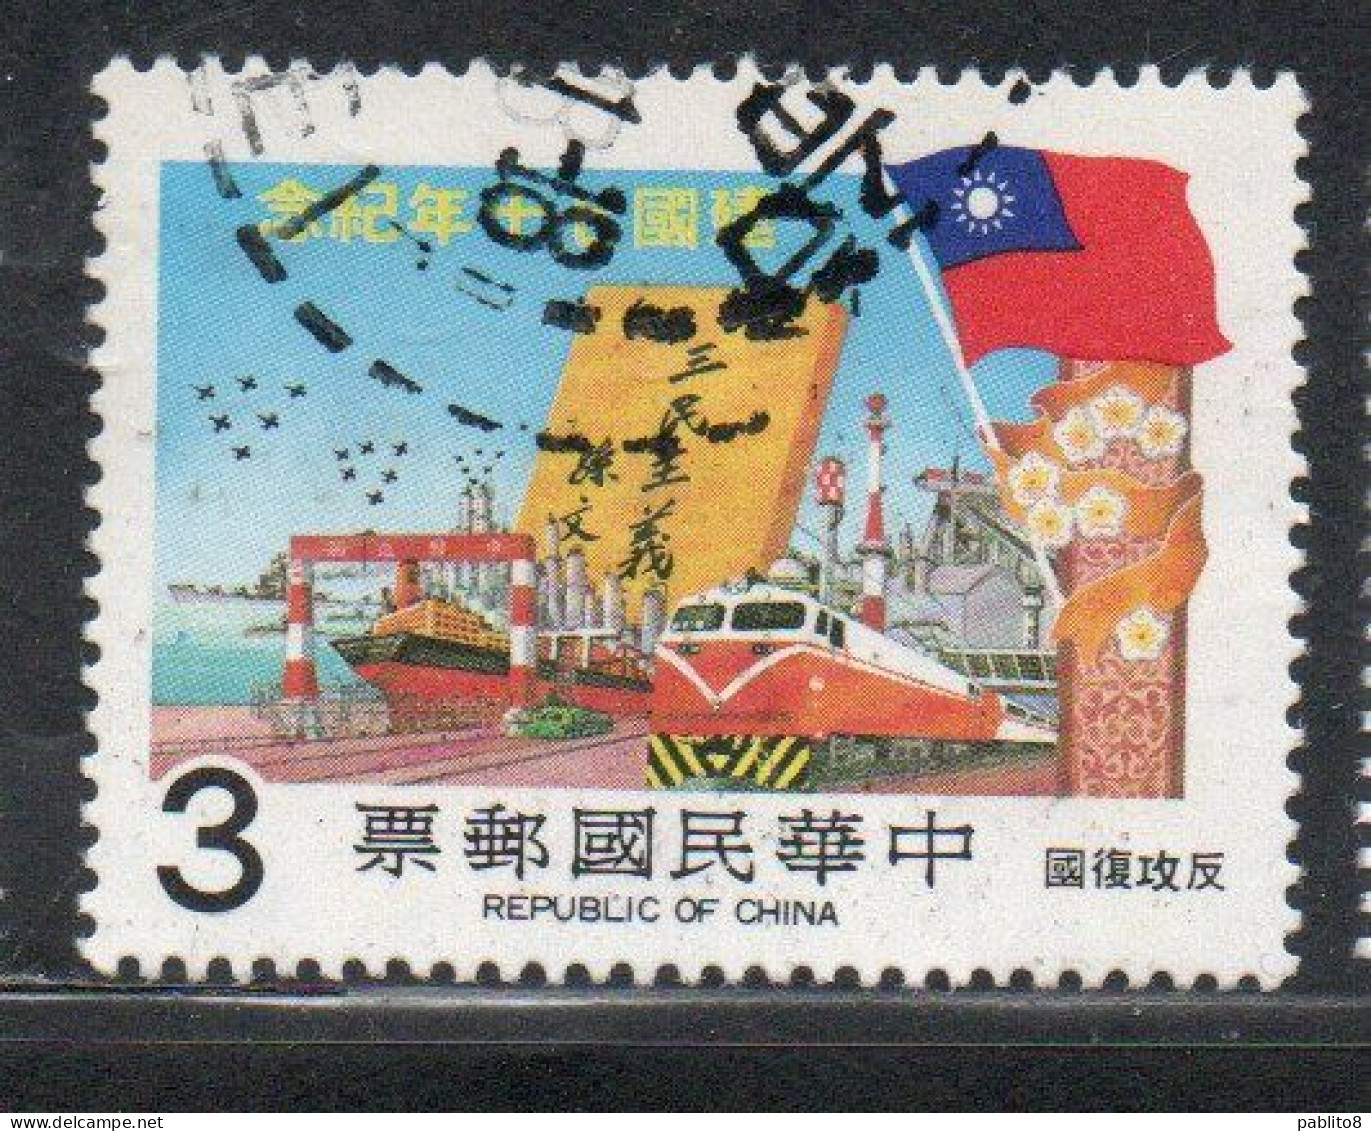 CHINA REPUBLIC CINA TAIWAN FORMOSA 1981 ANNIVERSARY REPUBLIC COUNTEROFFENSIVE UNIFICATION 3$ USED USATO OBLITERE - Gebruikt